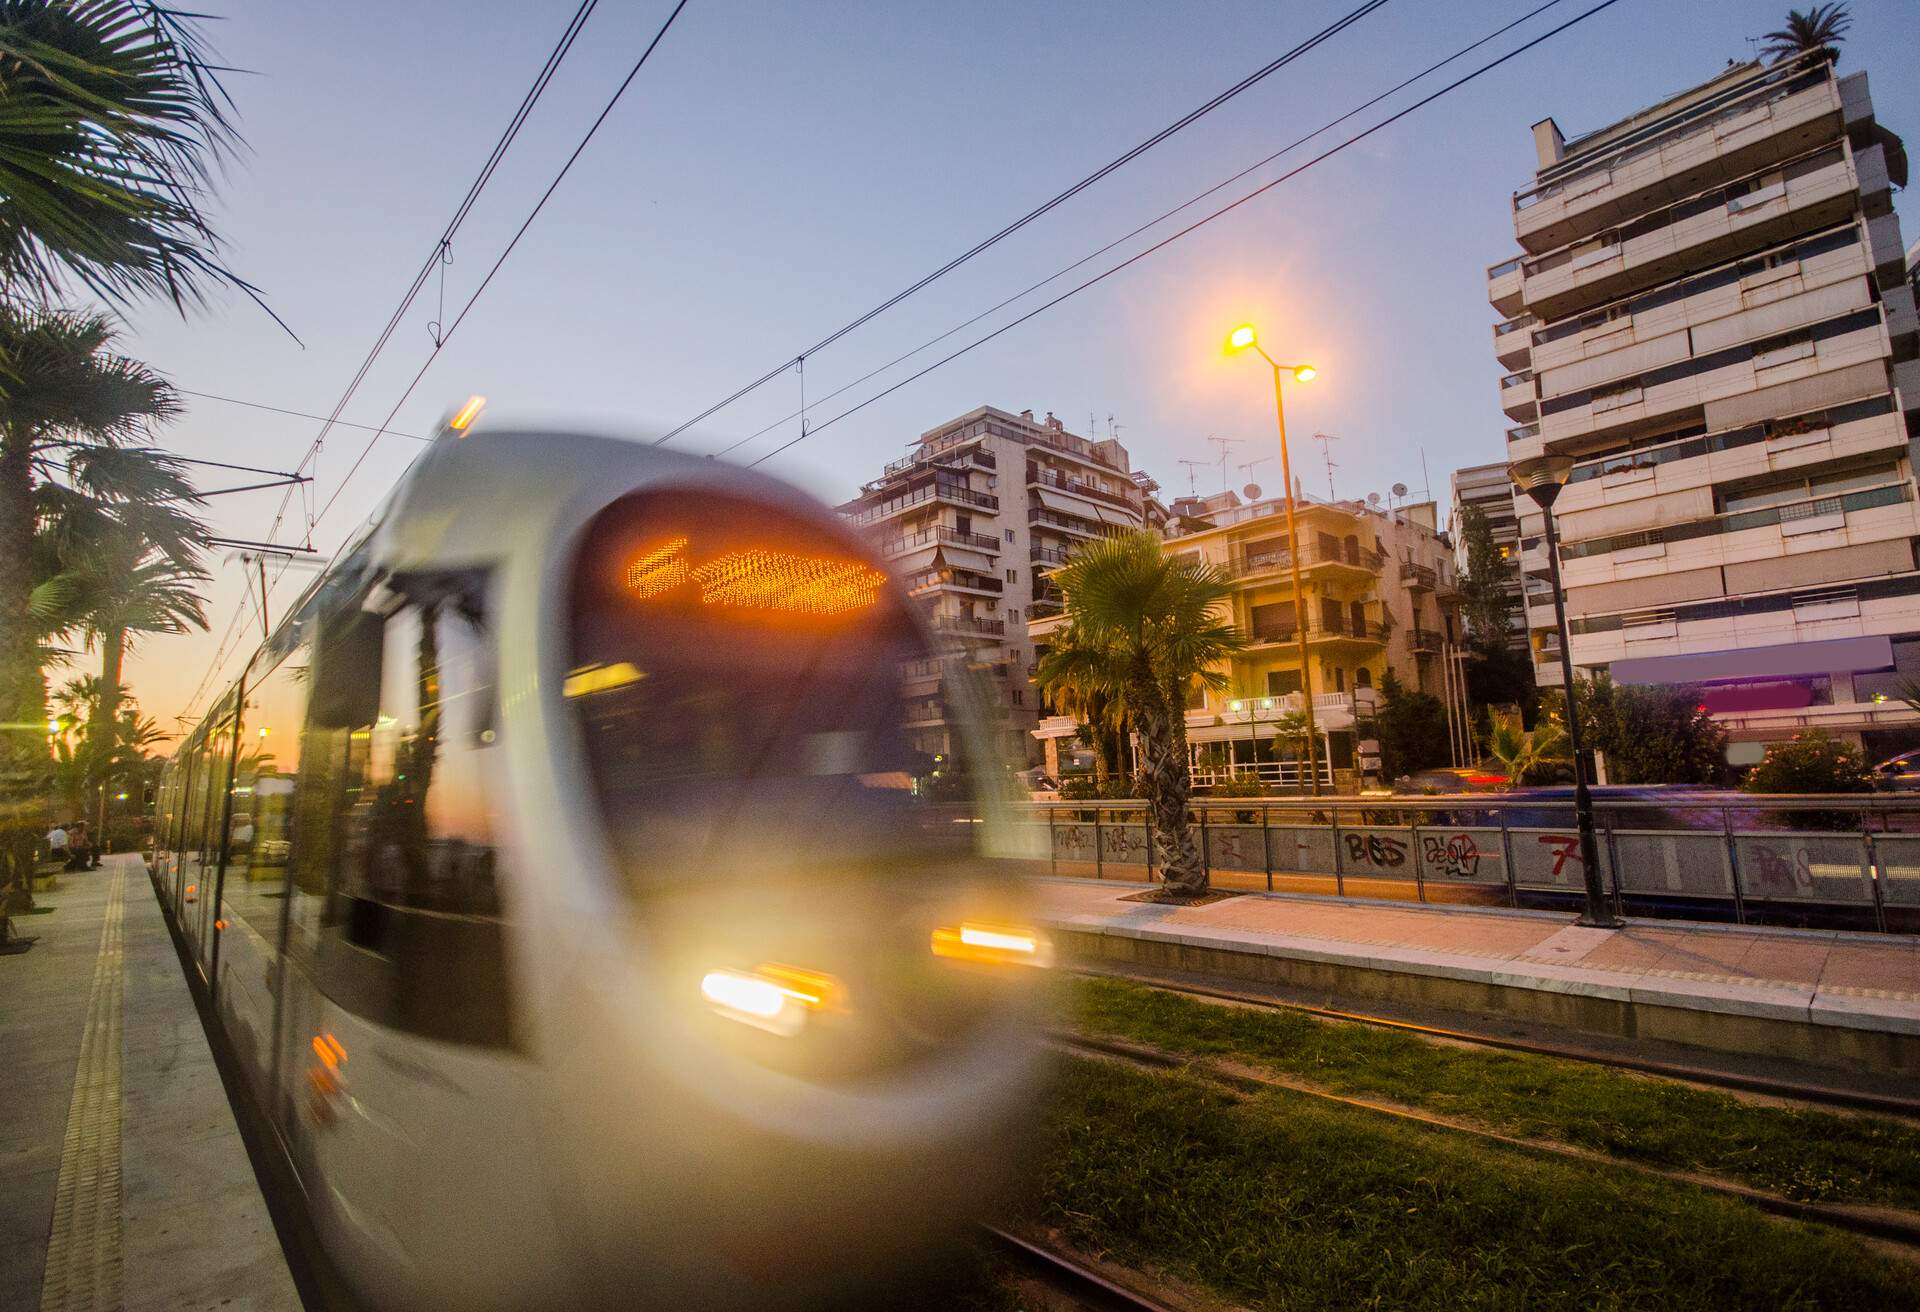 An Athens tram at sunset near Faliro district.